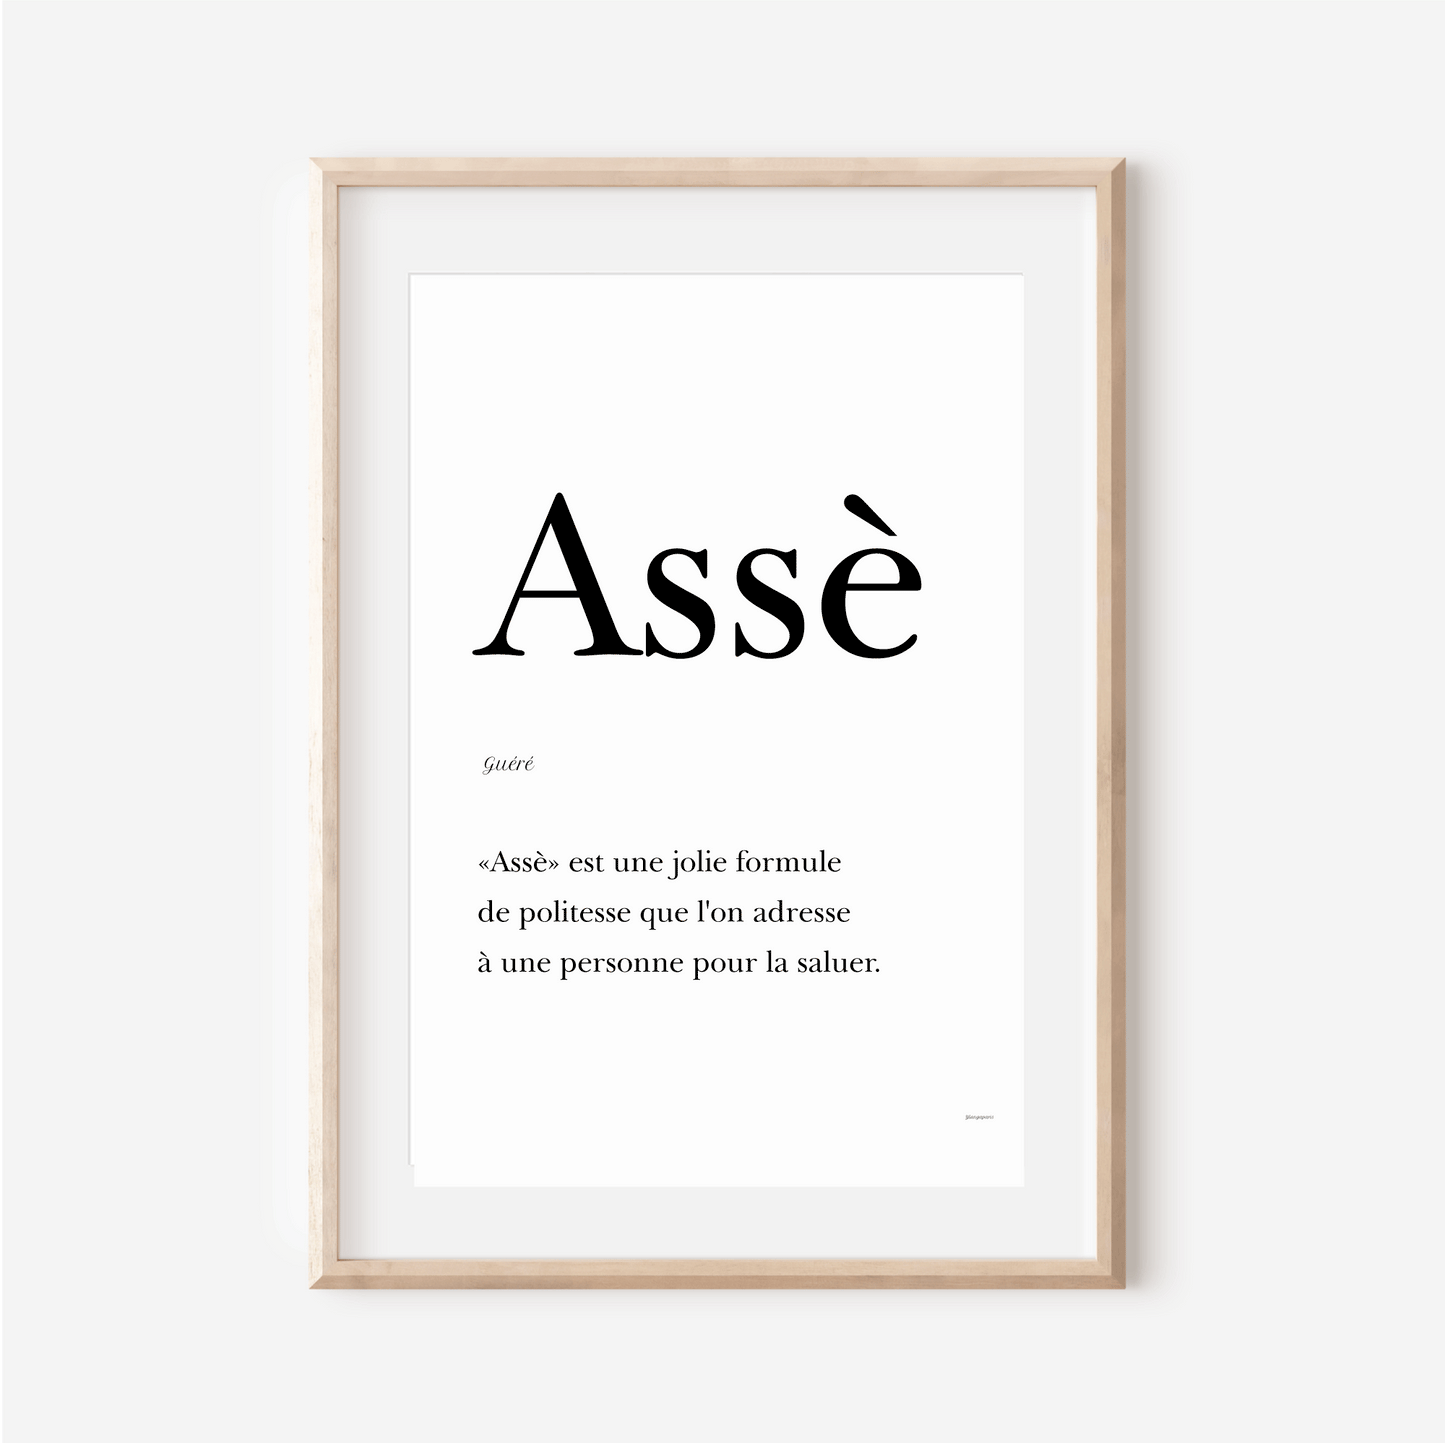 "Assè" poster - Greeting in Guéré